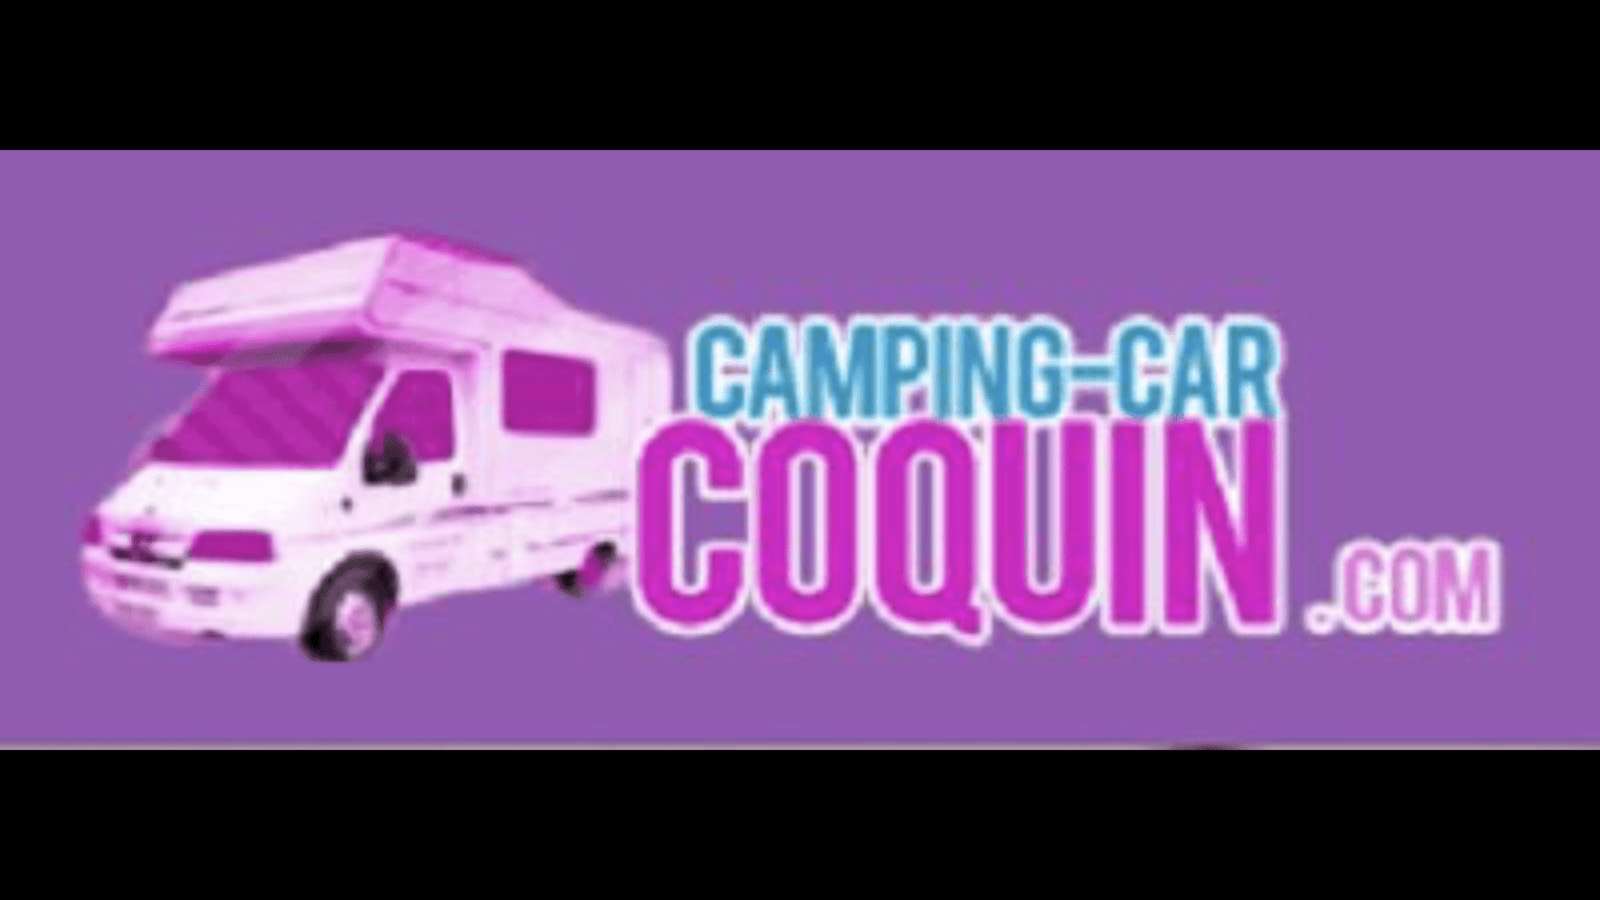 (c) Camping-car-coquin.com